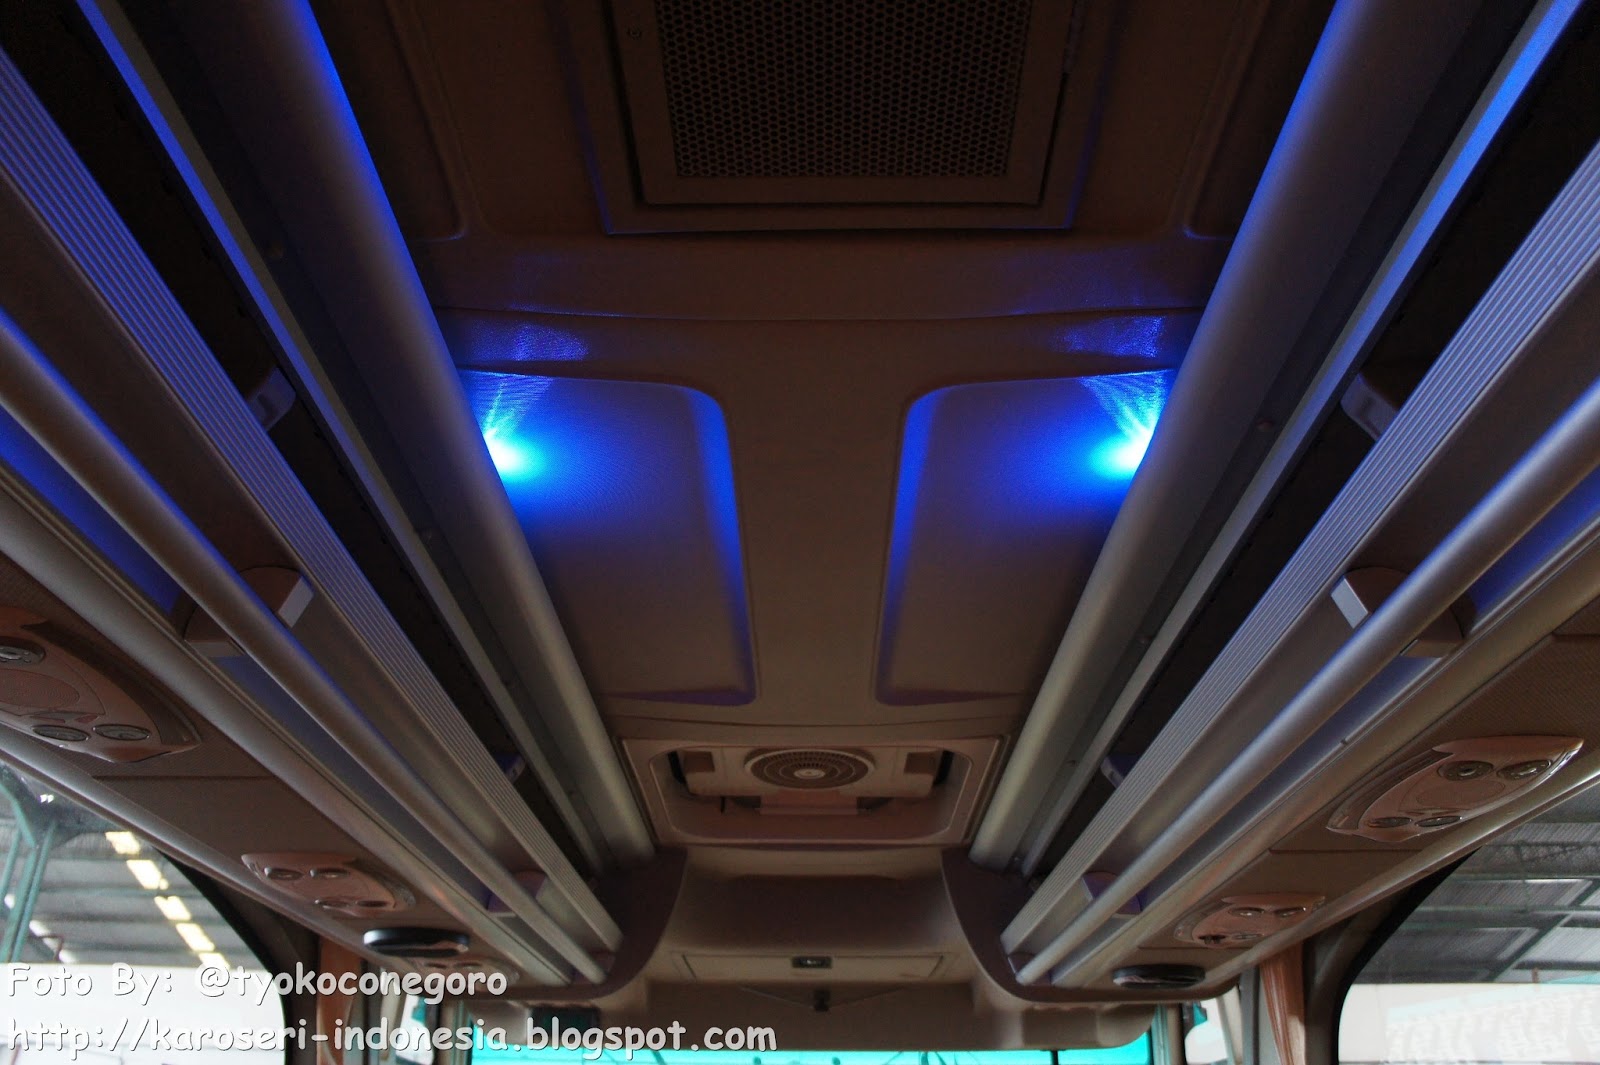 Bus Pariwisata Jetbus MD Karoseri Adi Putro Terbaru KAROSERI INDONESIA